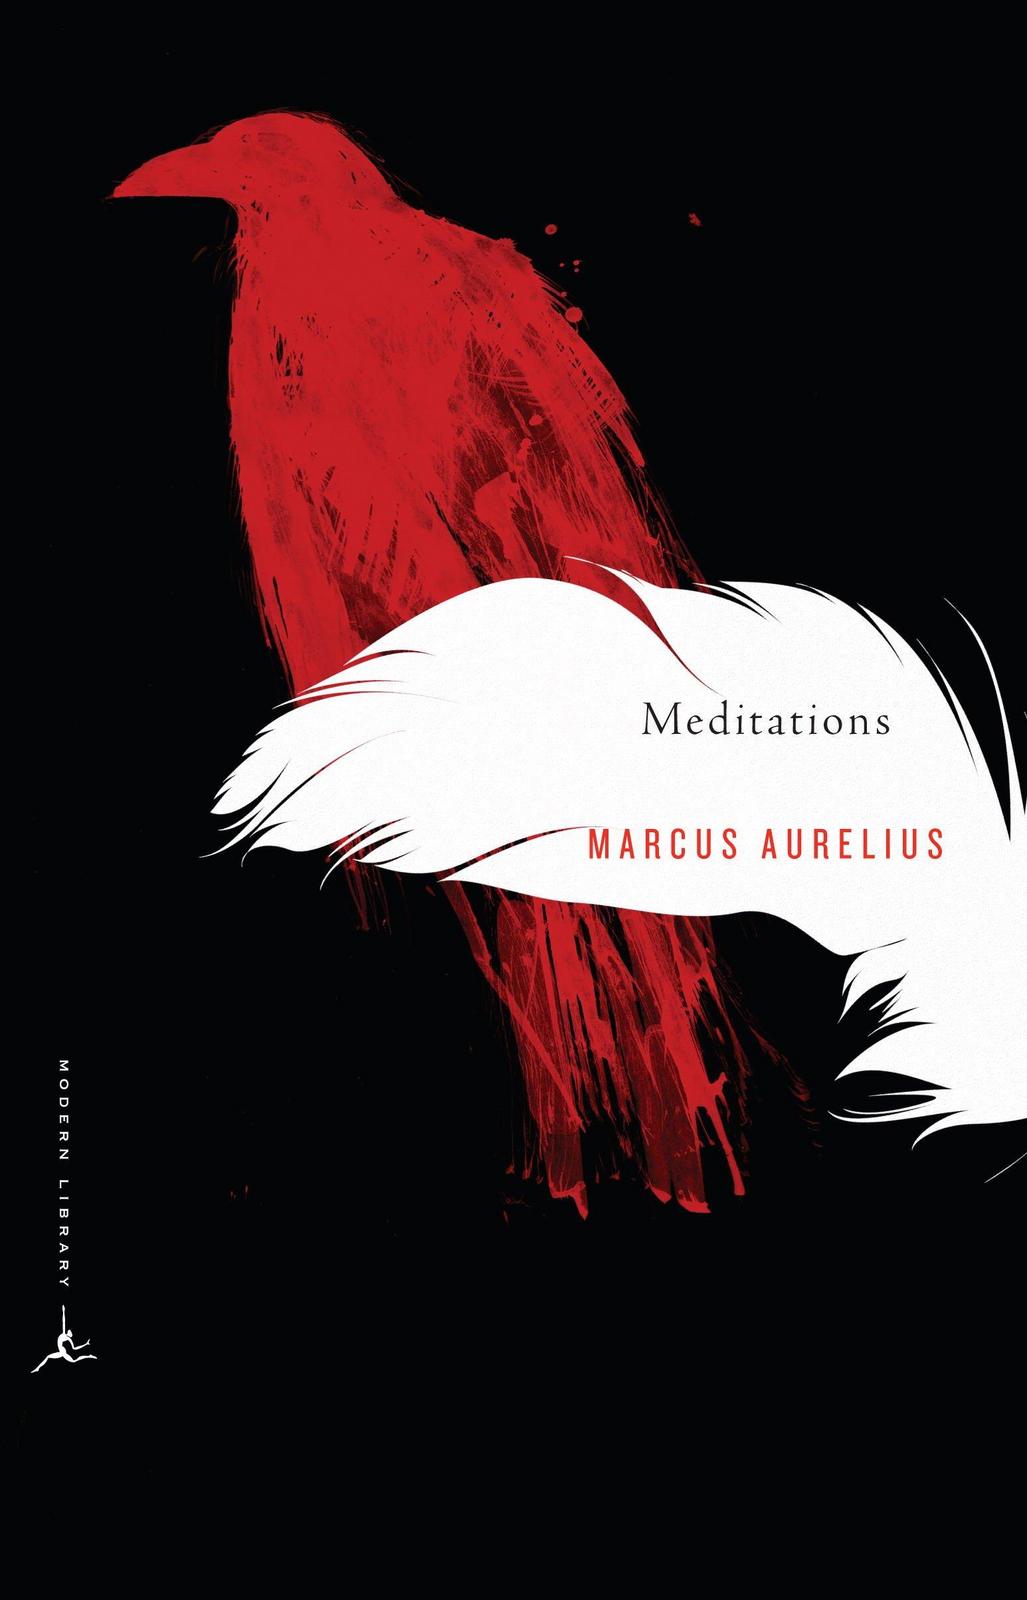 Marcus Aurelius: Meditations (2003)